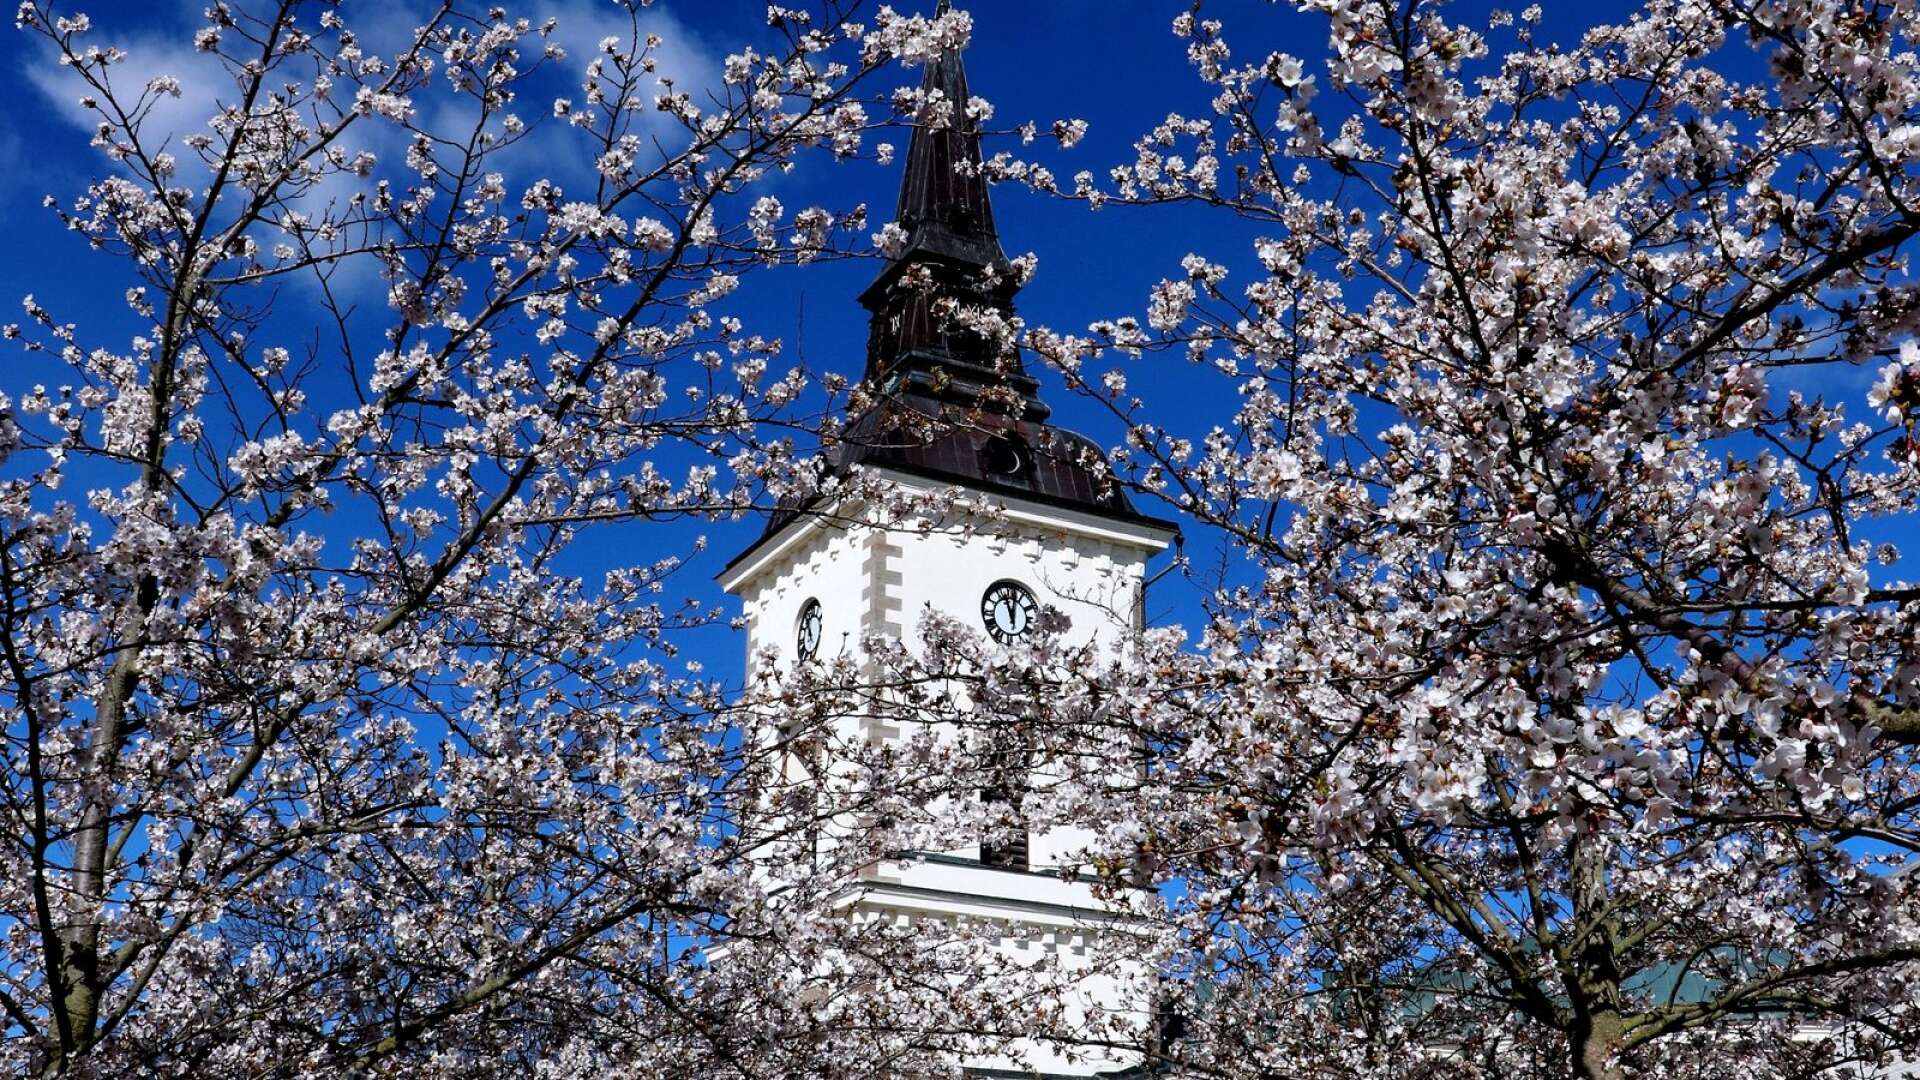 De blommande körsbärsträden på torget är ett omtyckt Hjomotiv för fotografer så här års.